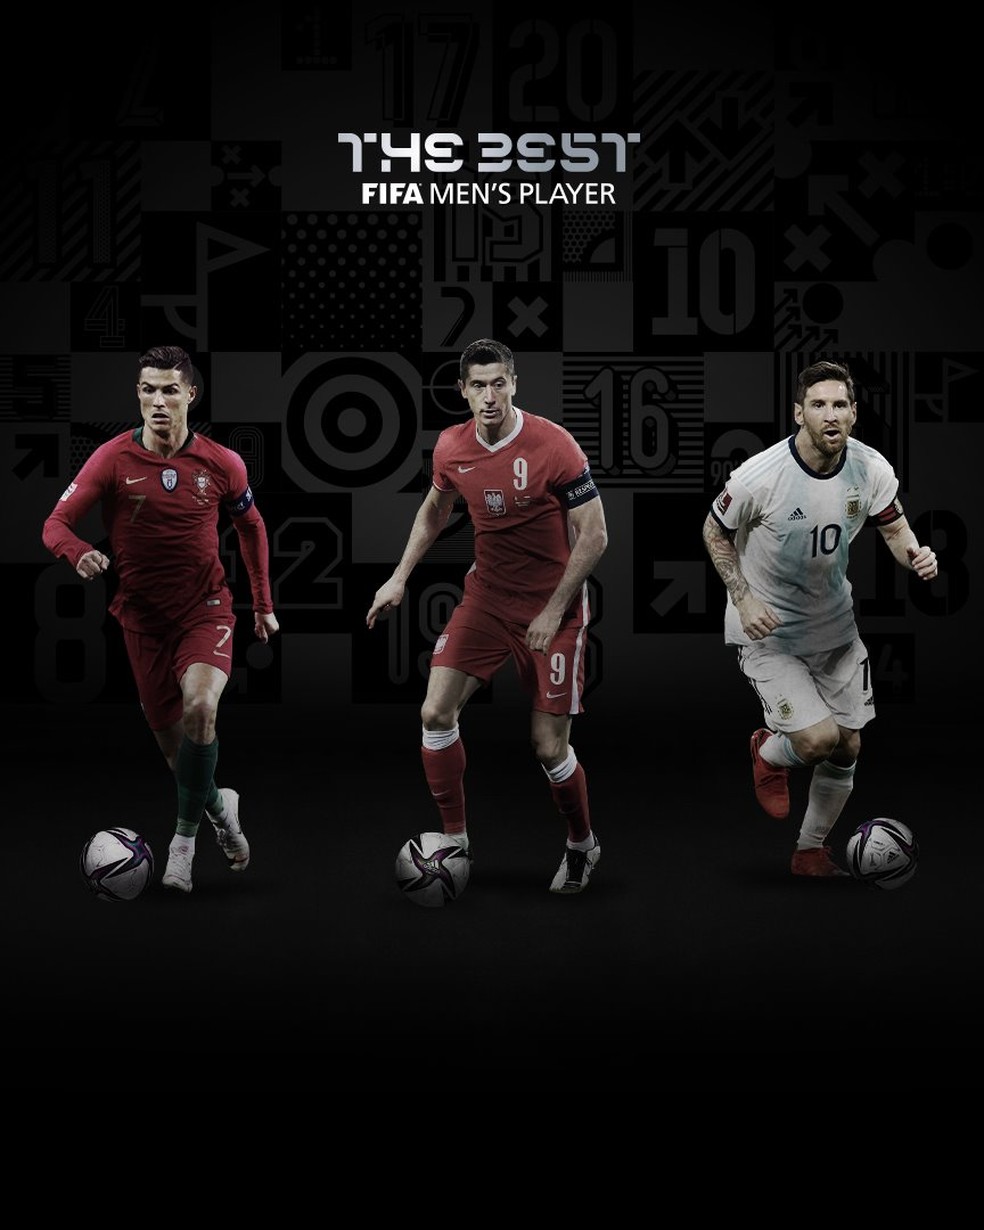 Fifa divulga finalistas ao prêmio de melhor goleiro do mundo